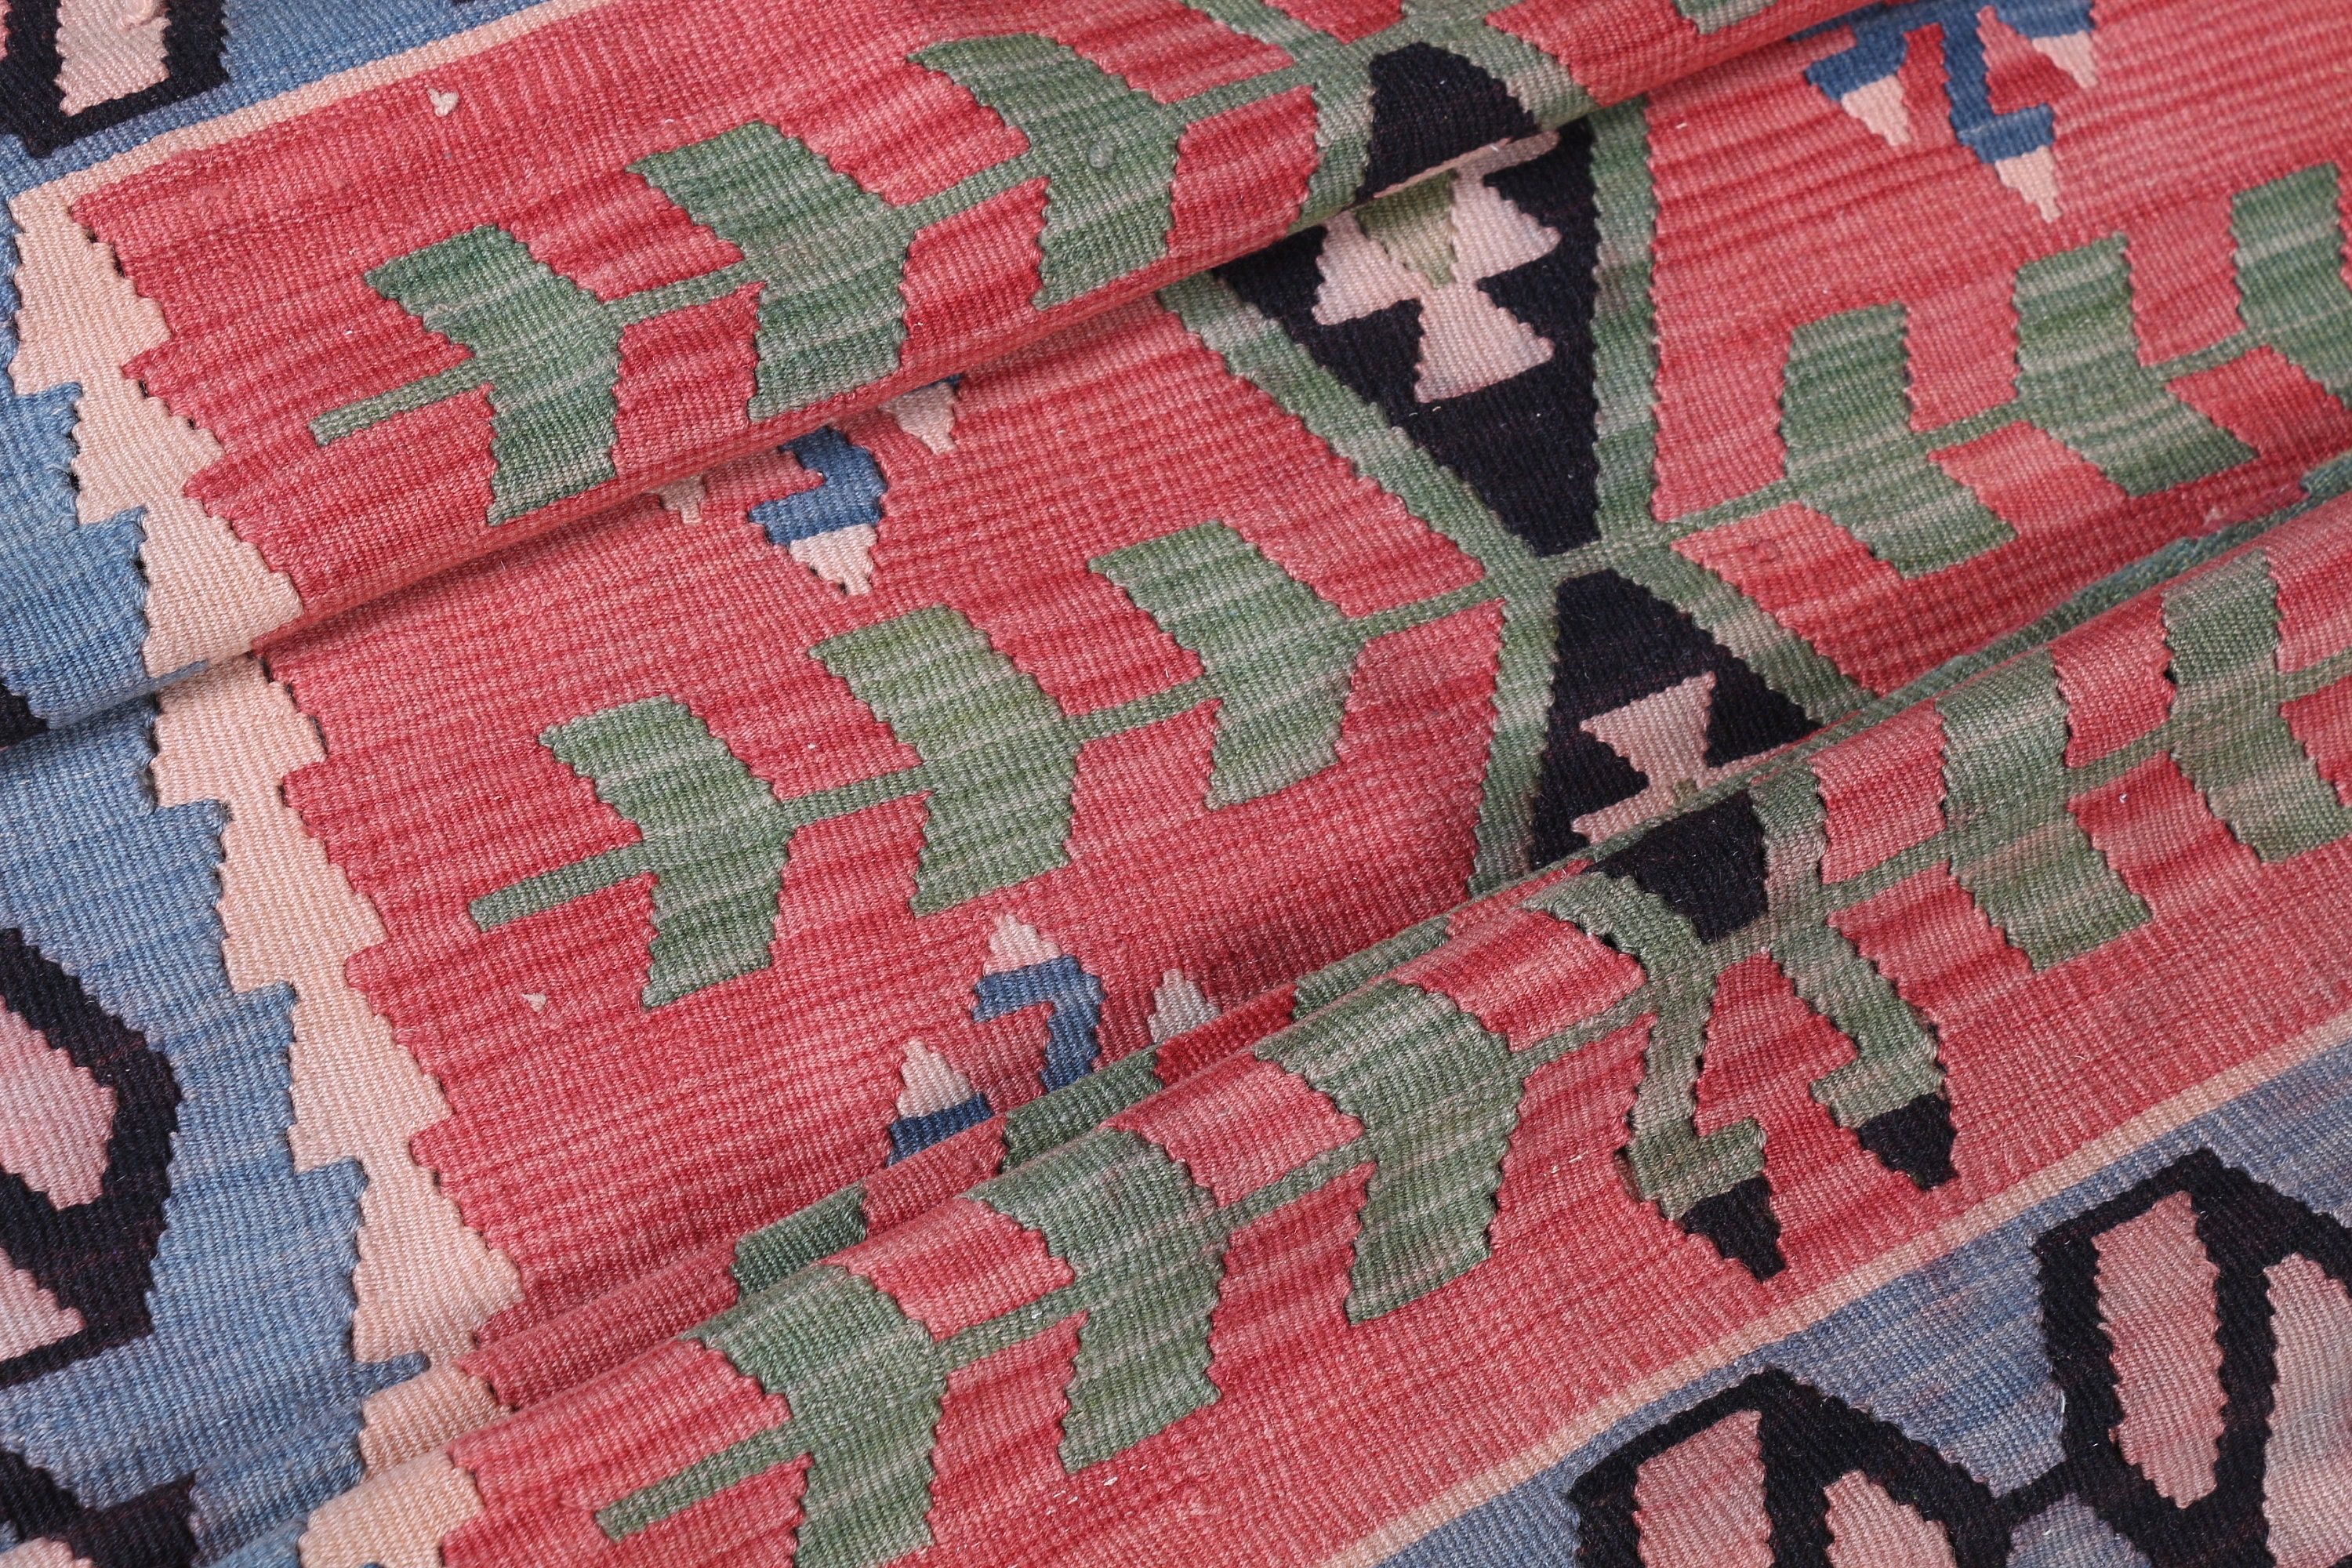 Oushak Rug, Bedroom Rugs, Pink Home Decor Rug, 3.6x6.3 ft Accent Rugs, Entry Rug, Vintage Rug, Kilim, Aztec Rug, Turkish Rug